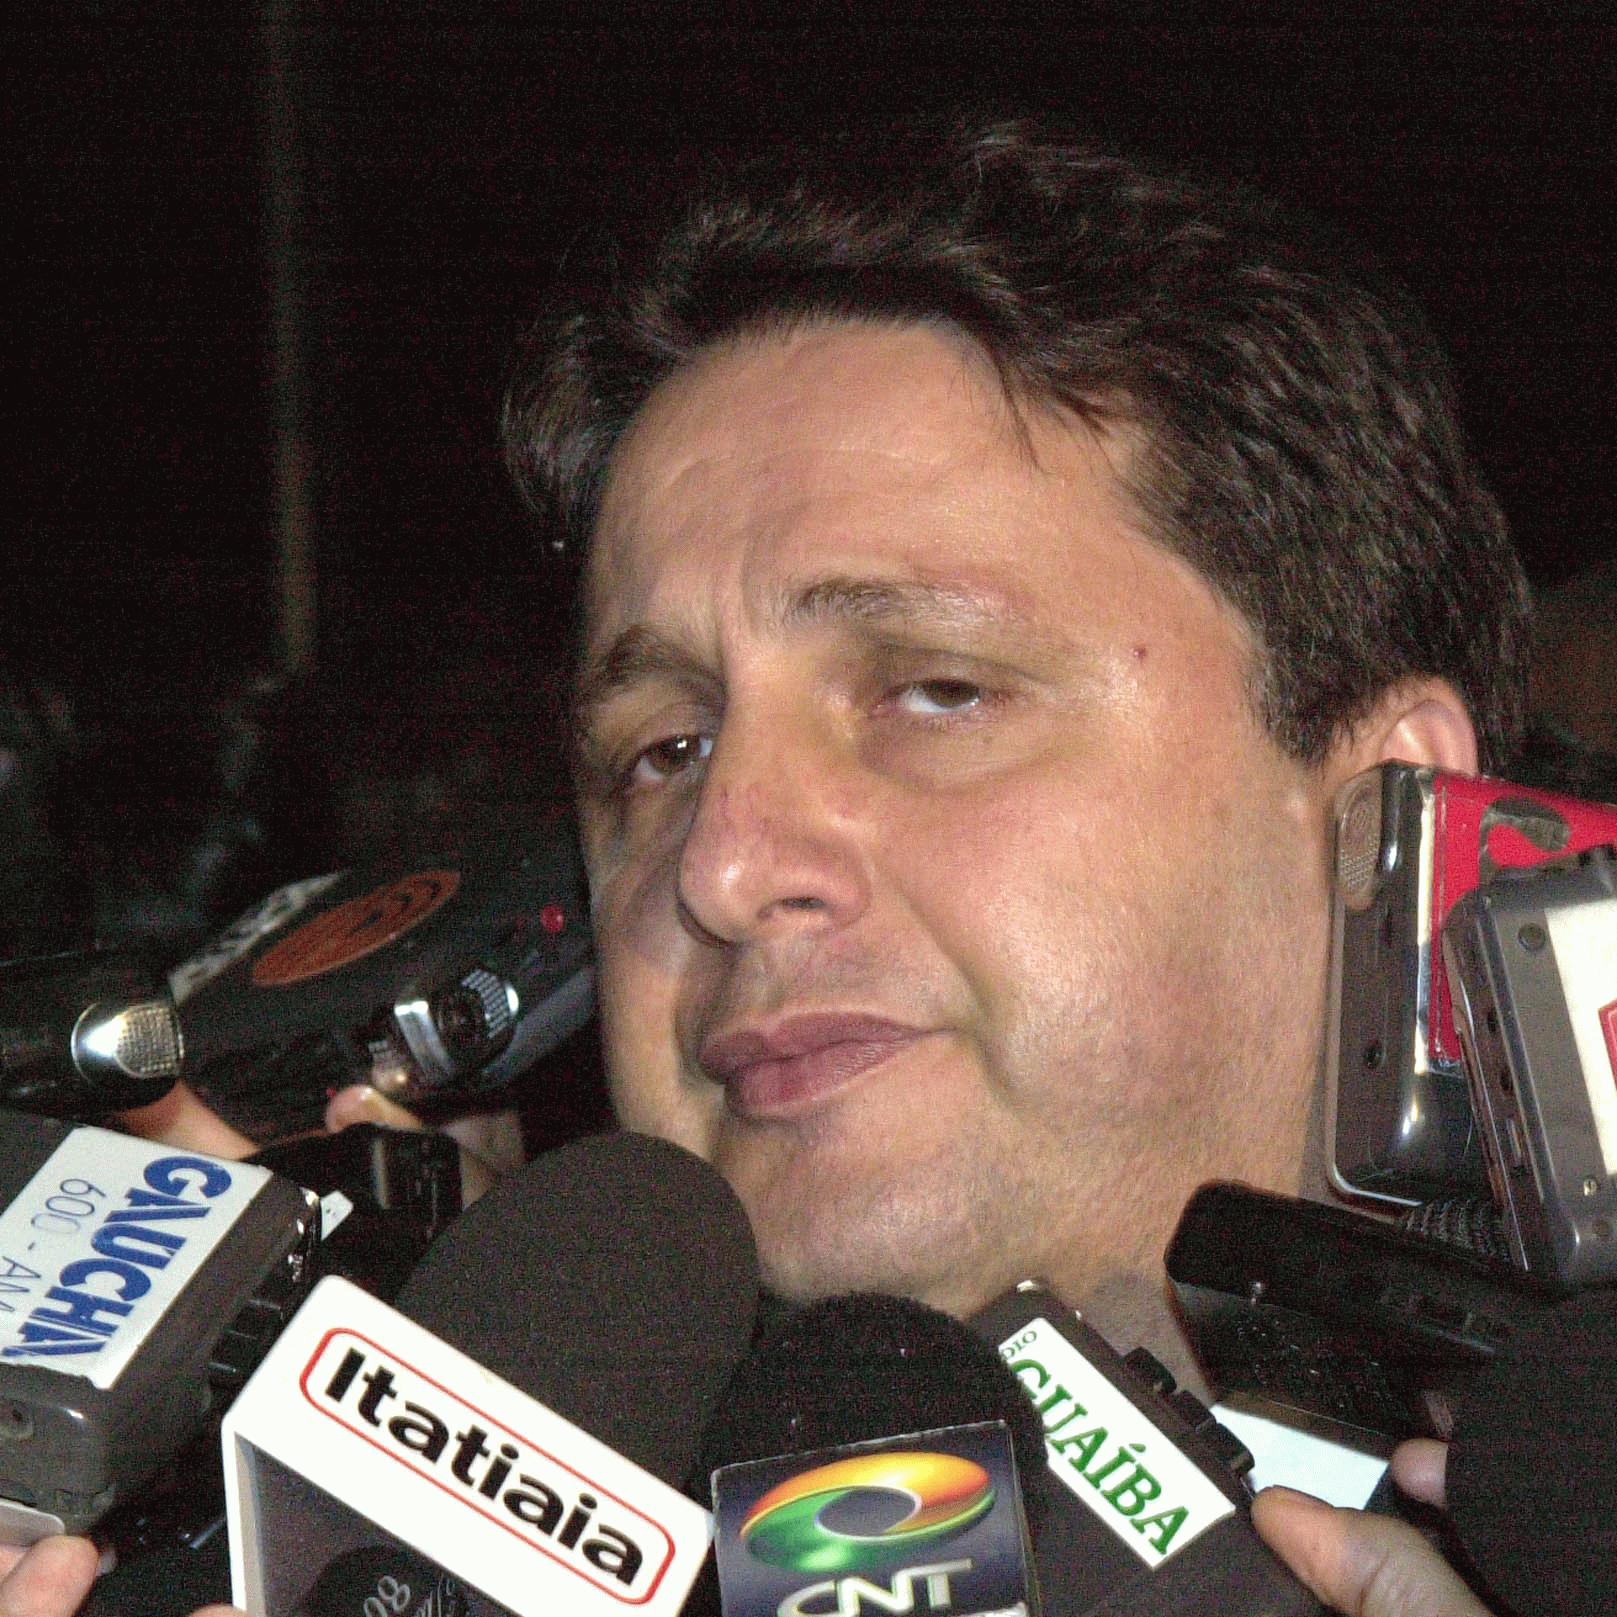 Garotinho Oficialmente dentro das eleições 2010